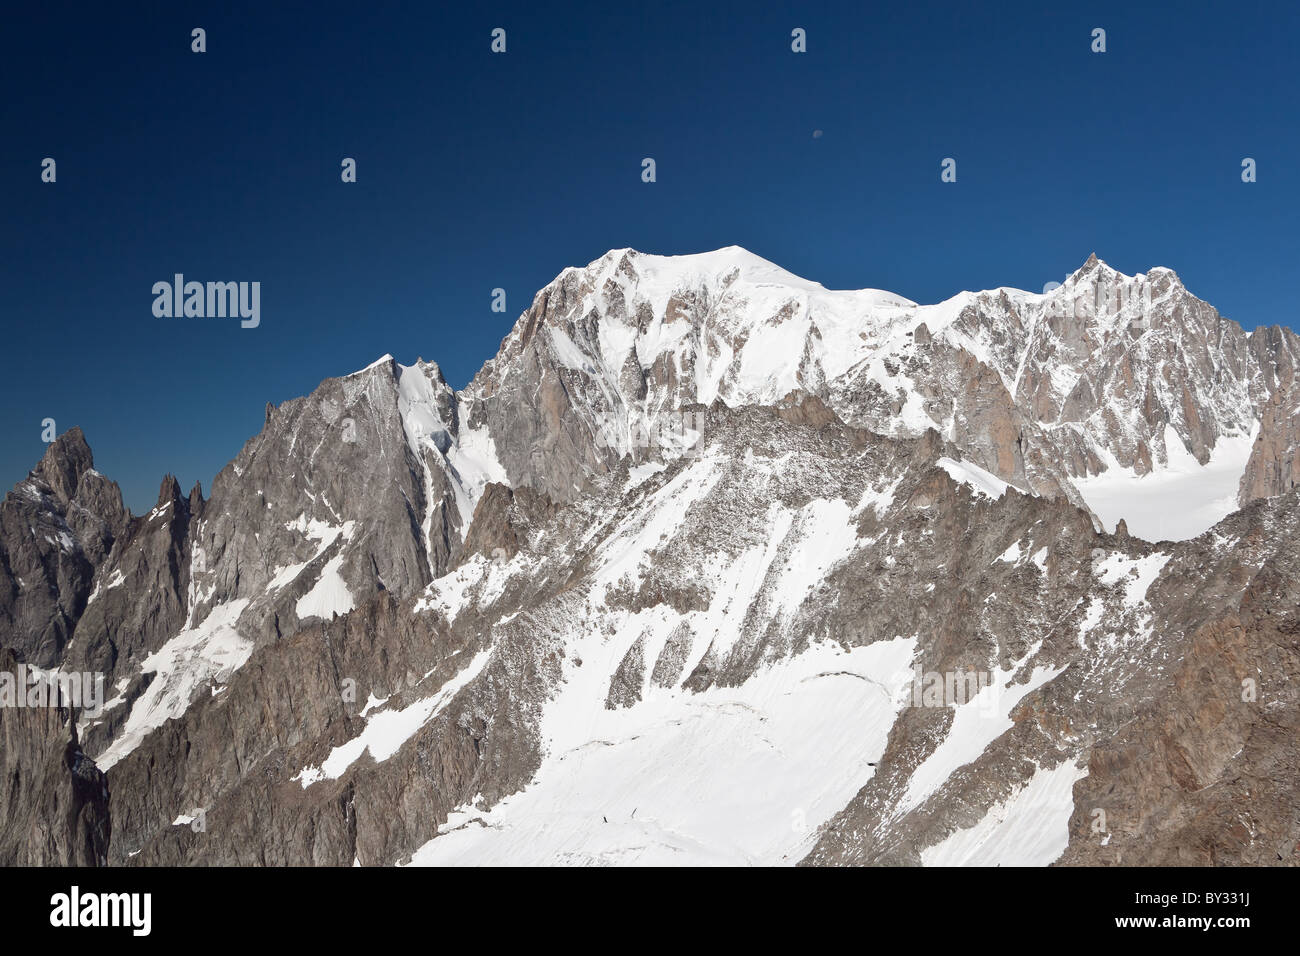 Sommer-Blick auf den Mont Blanc Mountain von Helbronner Spitze  Stockfotografie - Alamy